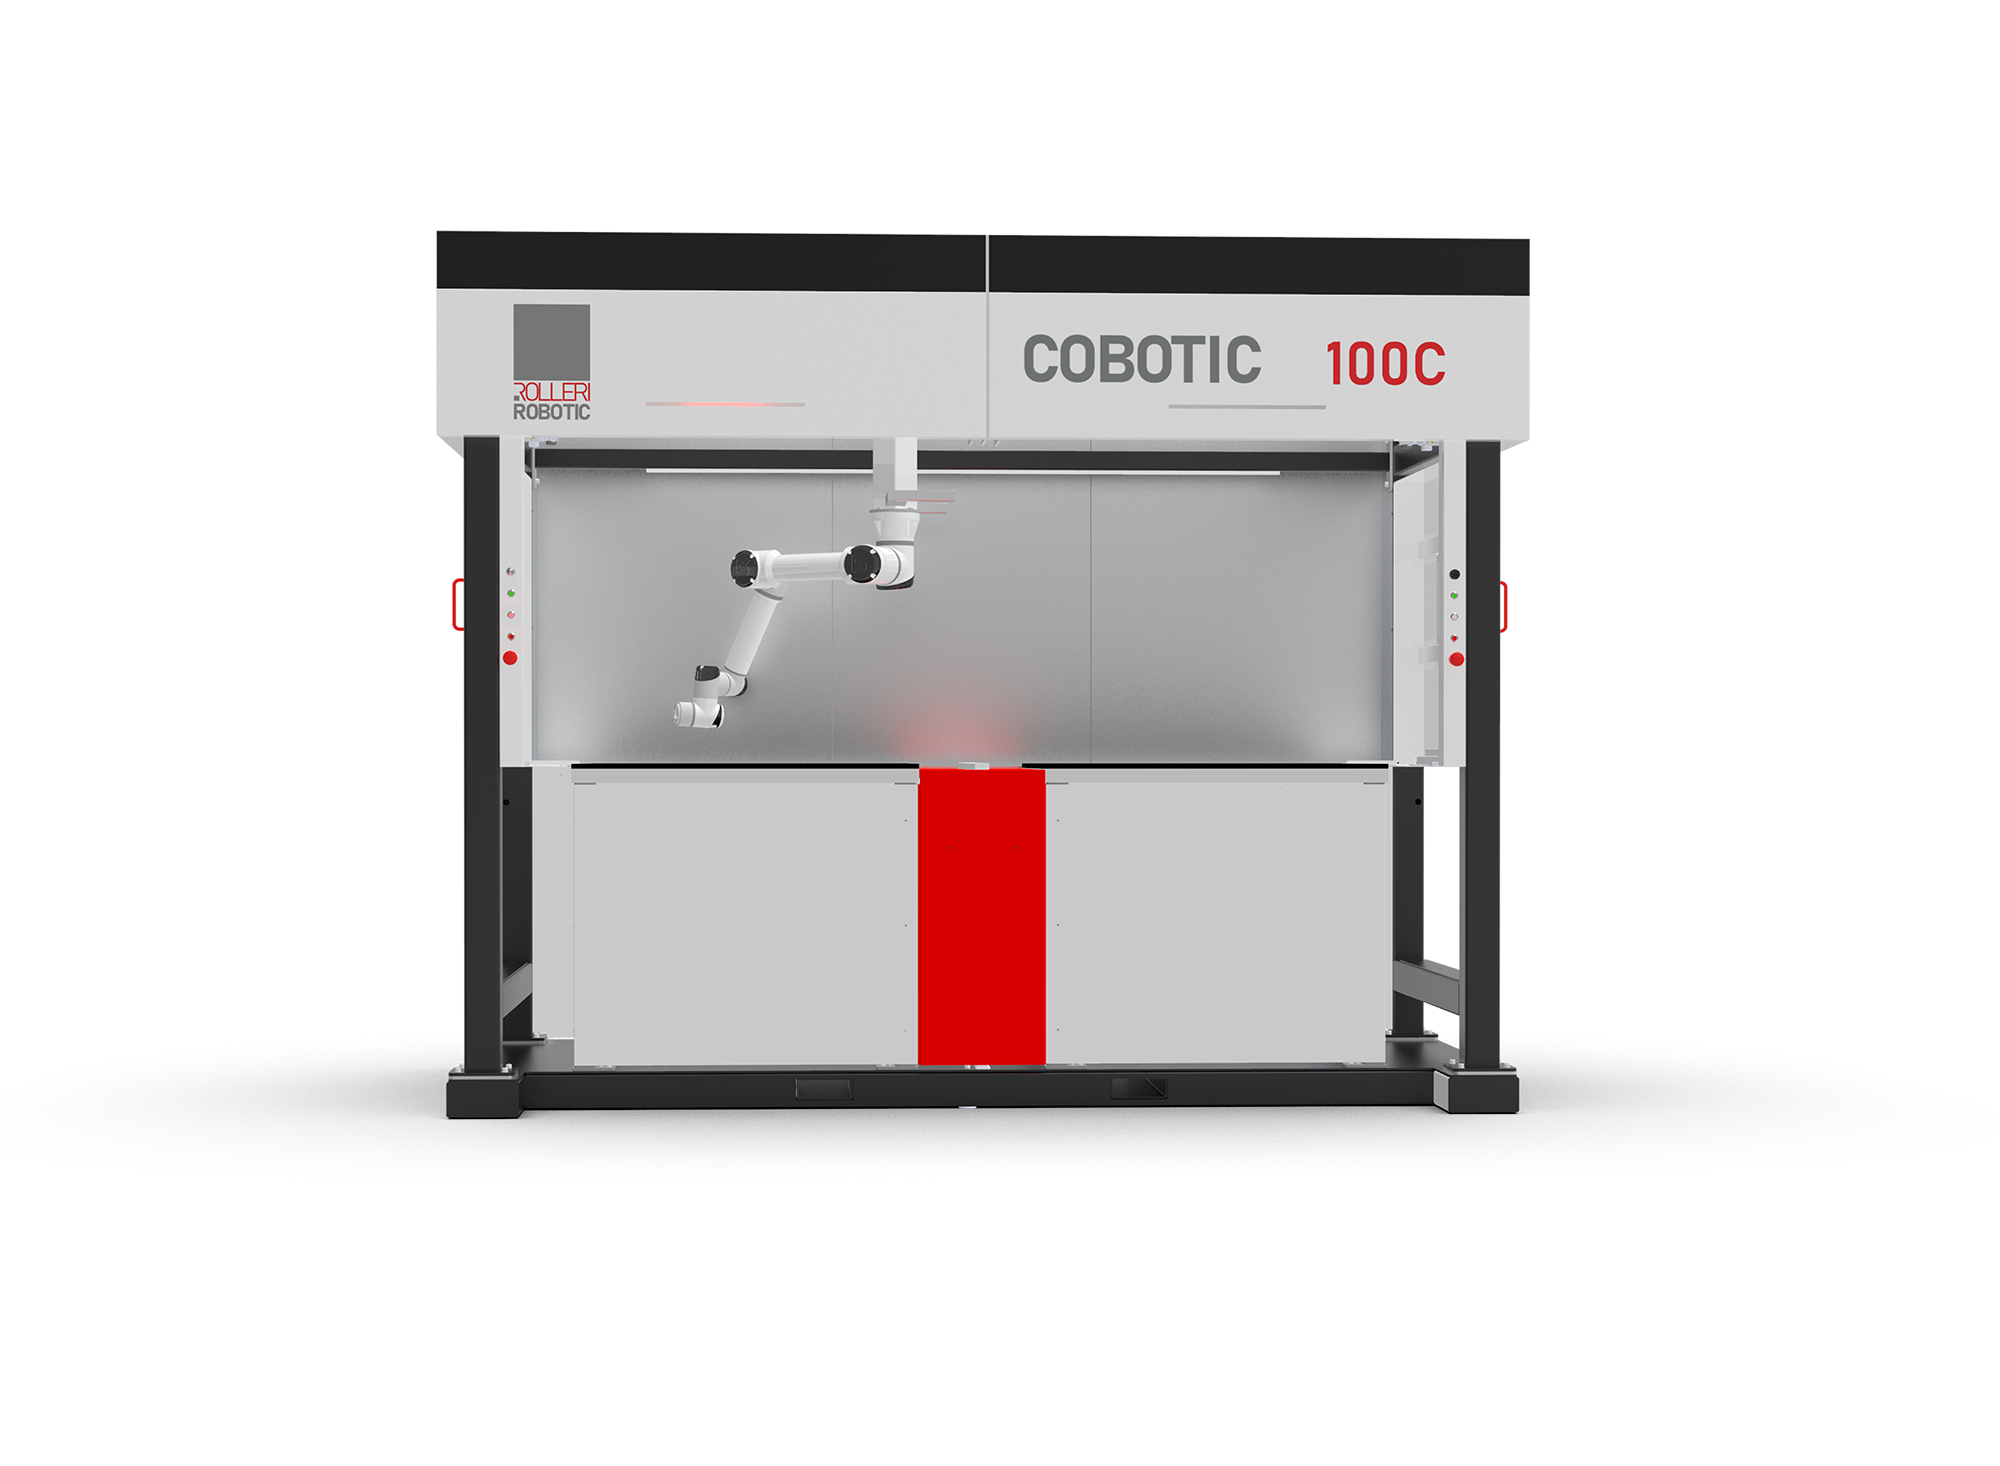 Rolleri Robotic - Cobotic 100C